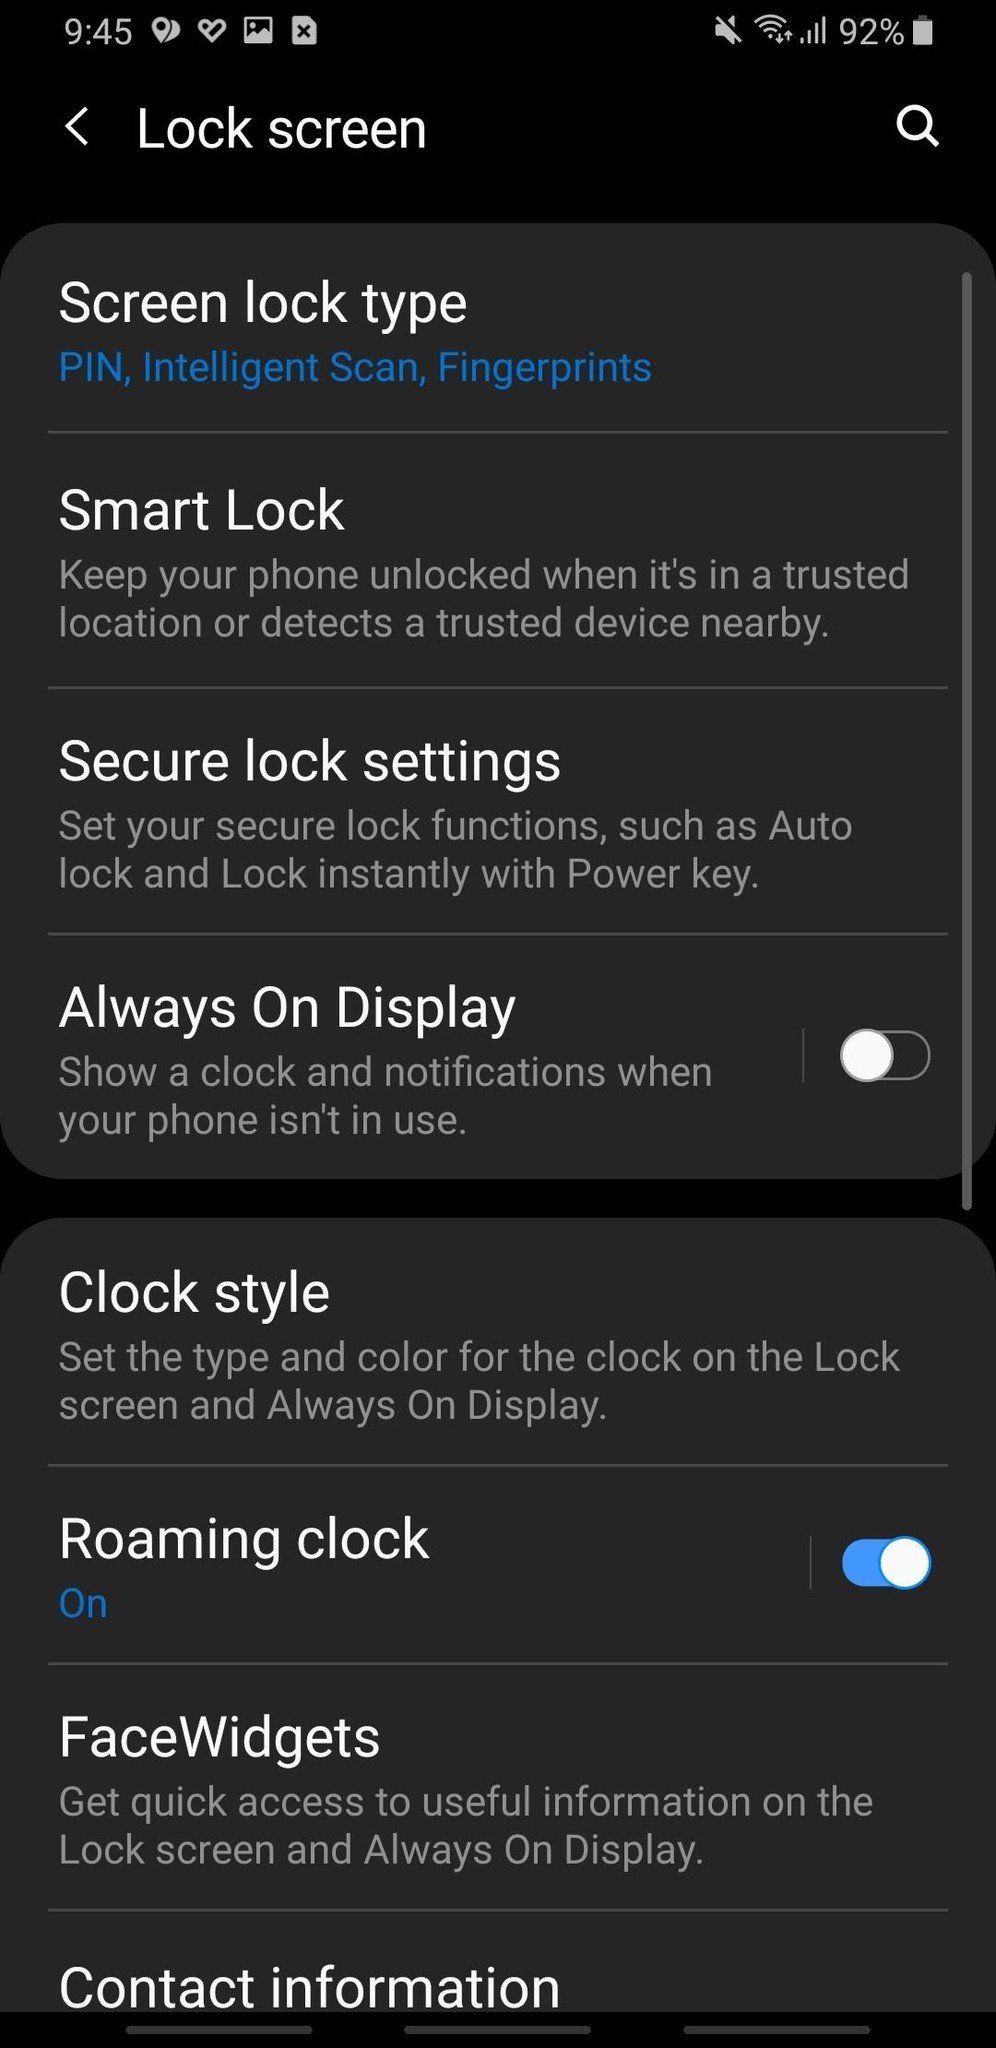 Secure lock settings